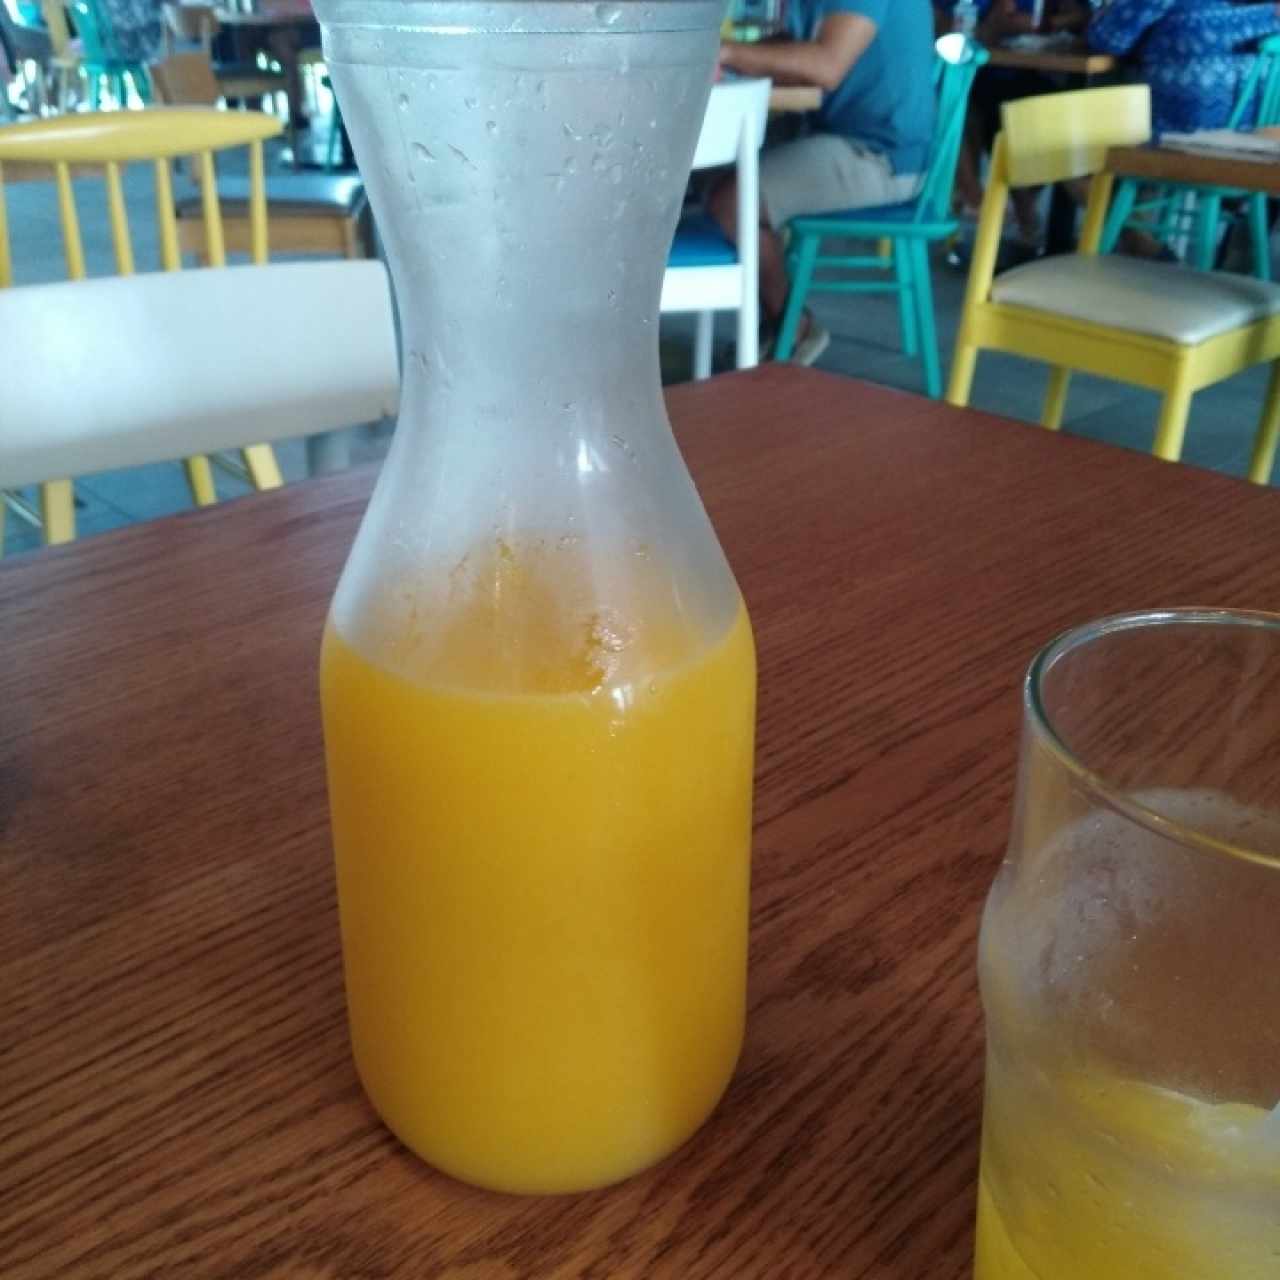 jarra de jugo de naranja 100% natural 